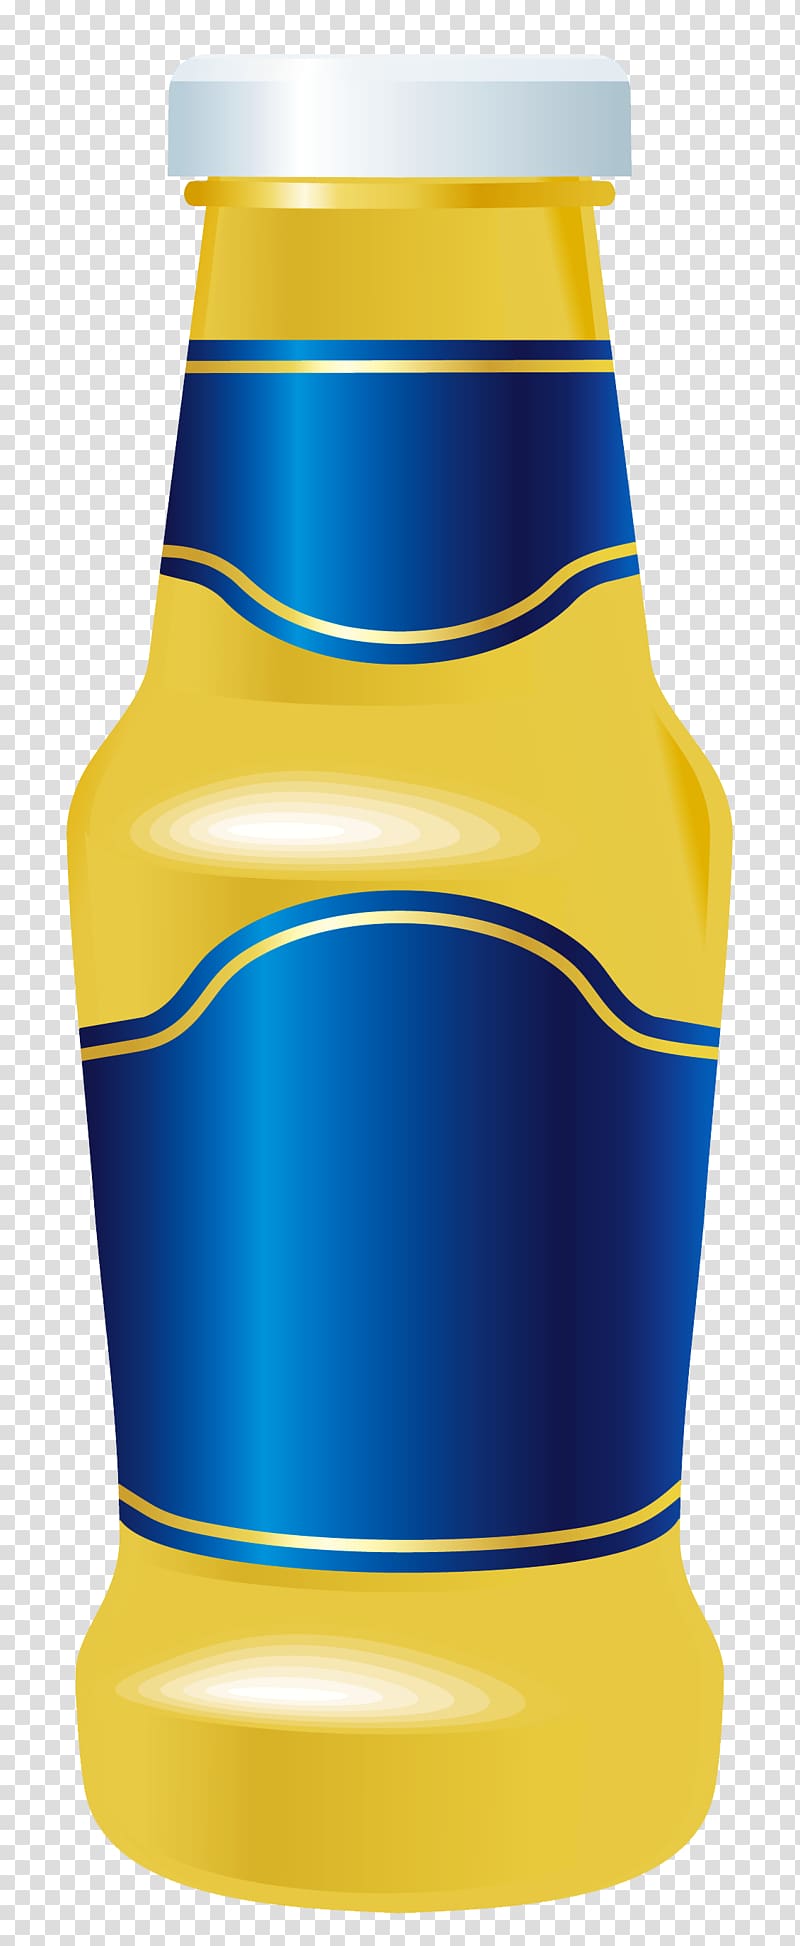 Juice Hot dog Bottle Mustard , bottle transparent background PNG clipart